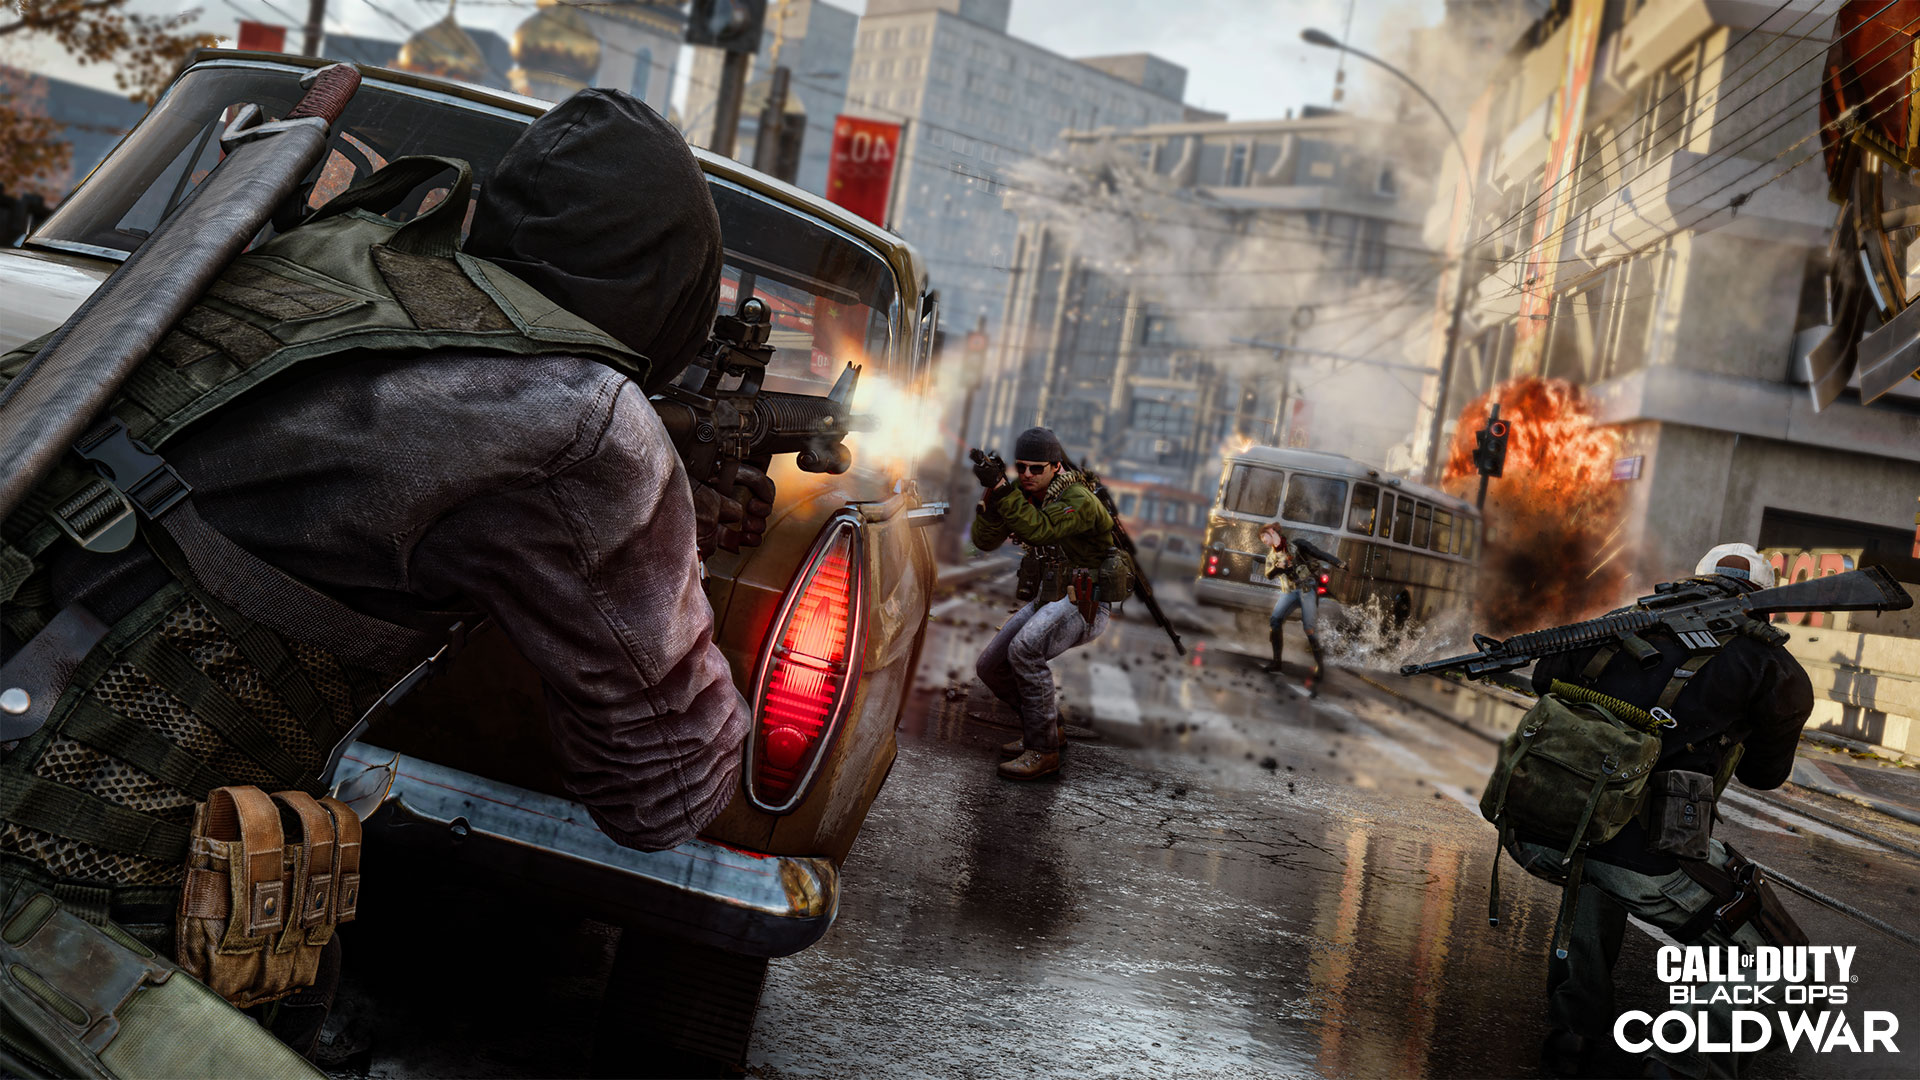 Hình ảnh chiến tranh lạnh của Call Of Duty Black Ops